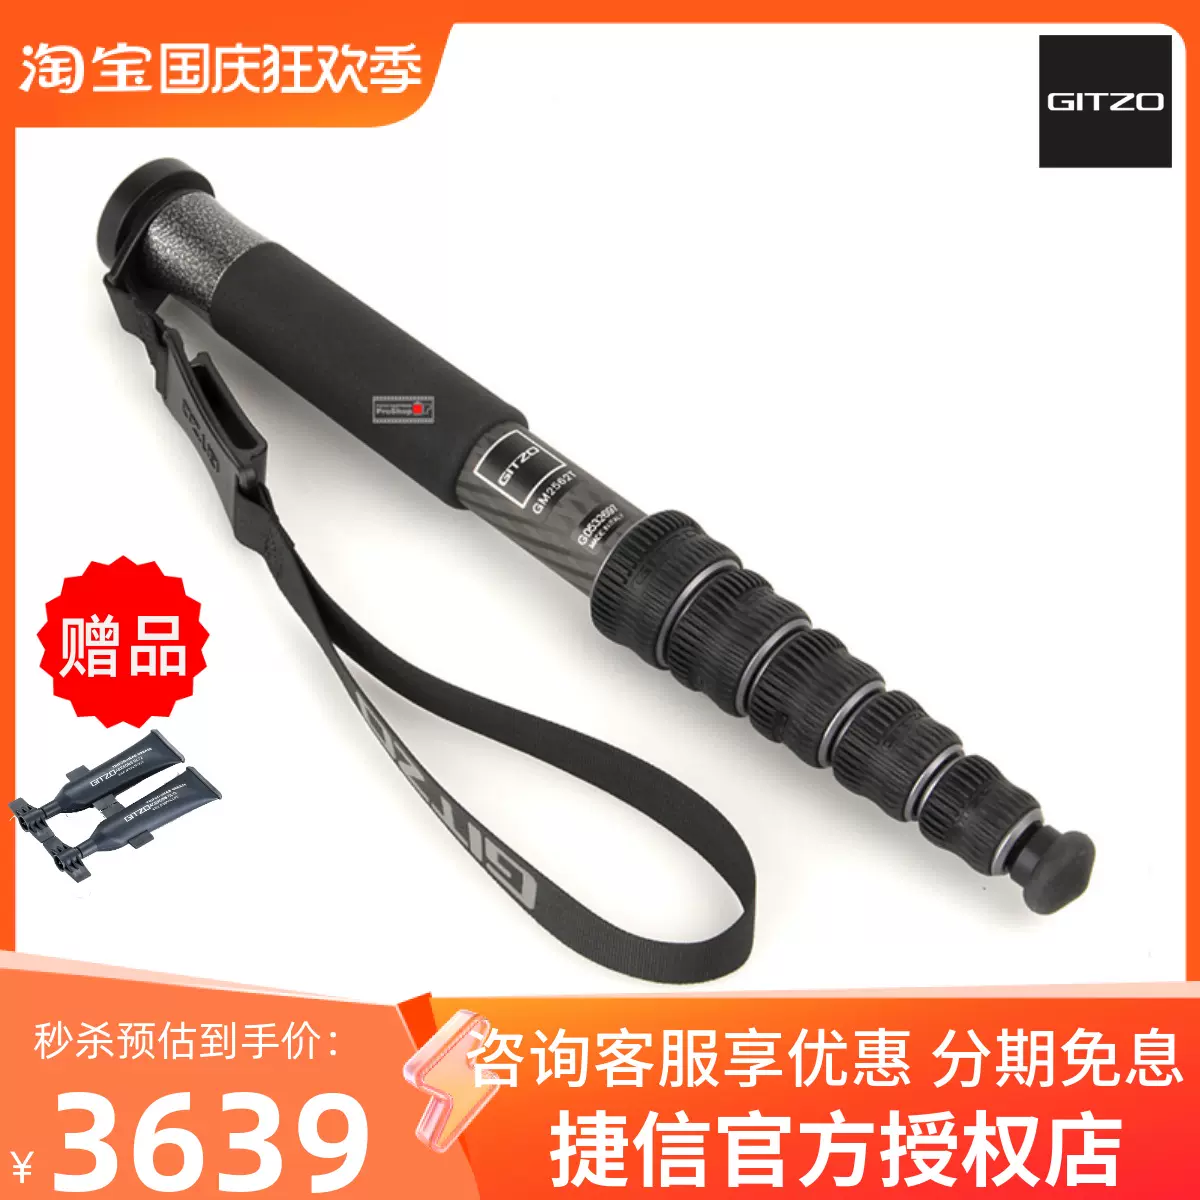 捷信Gitzo GM2562T新旅行者单反相机摄影支撑碳纤维6节独脚架新品-Taobao